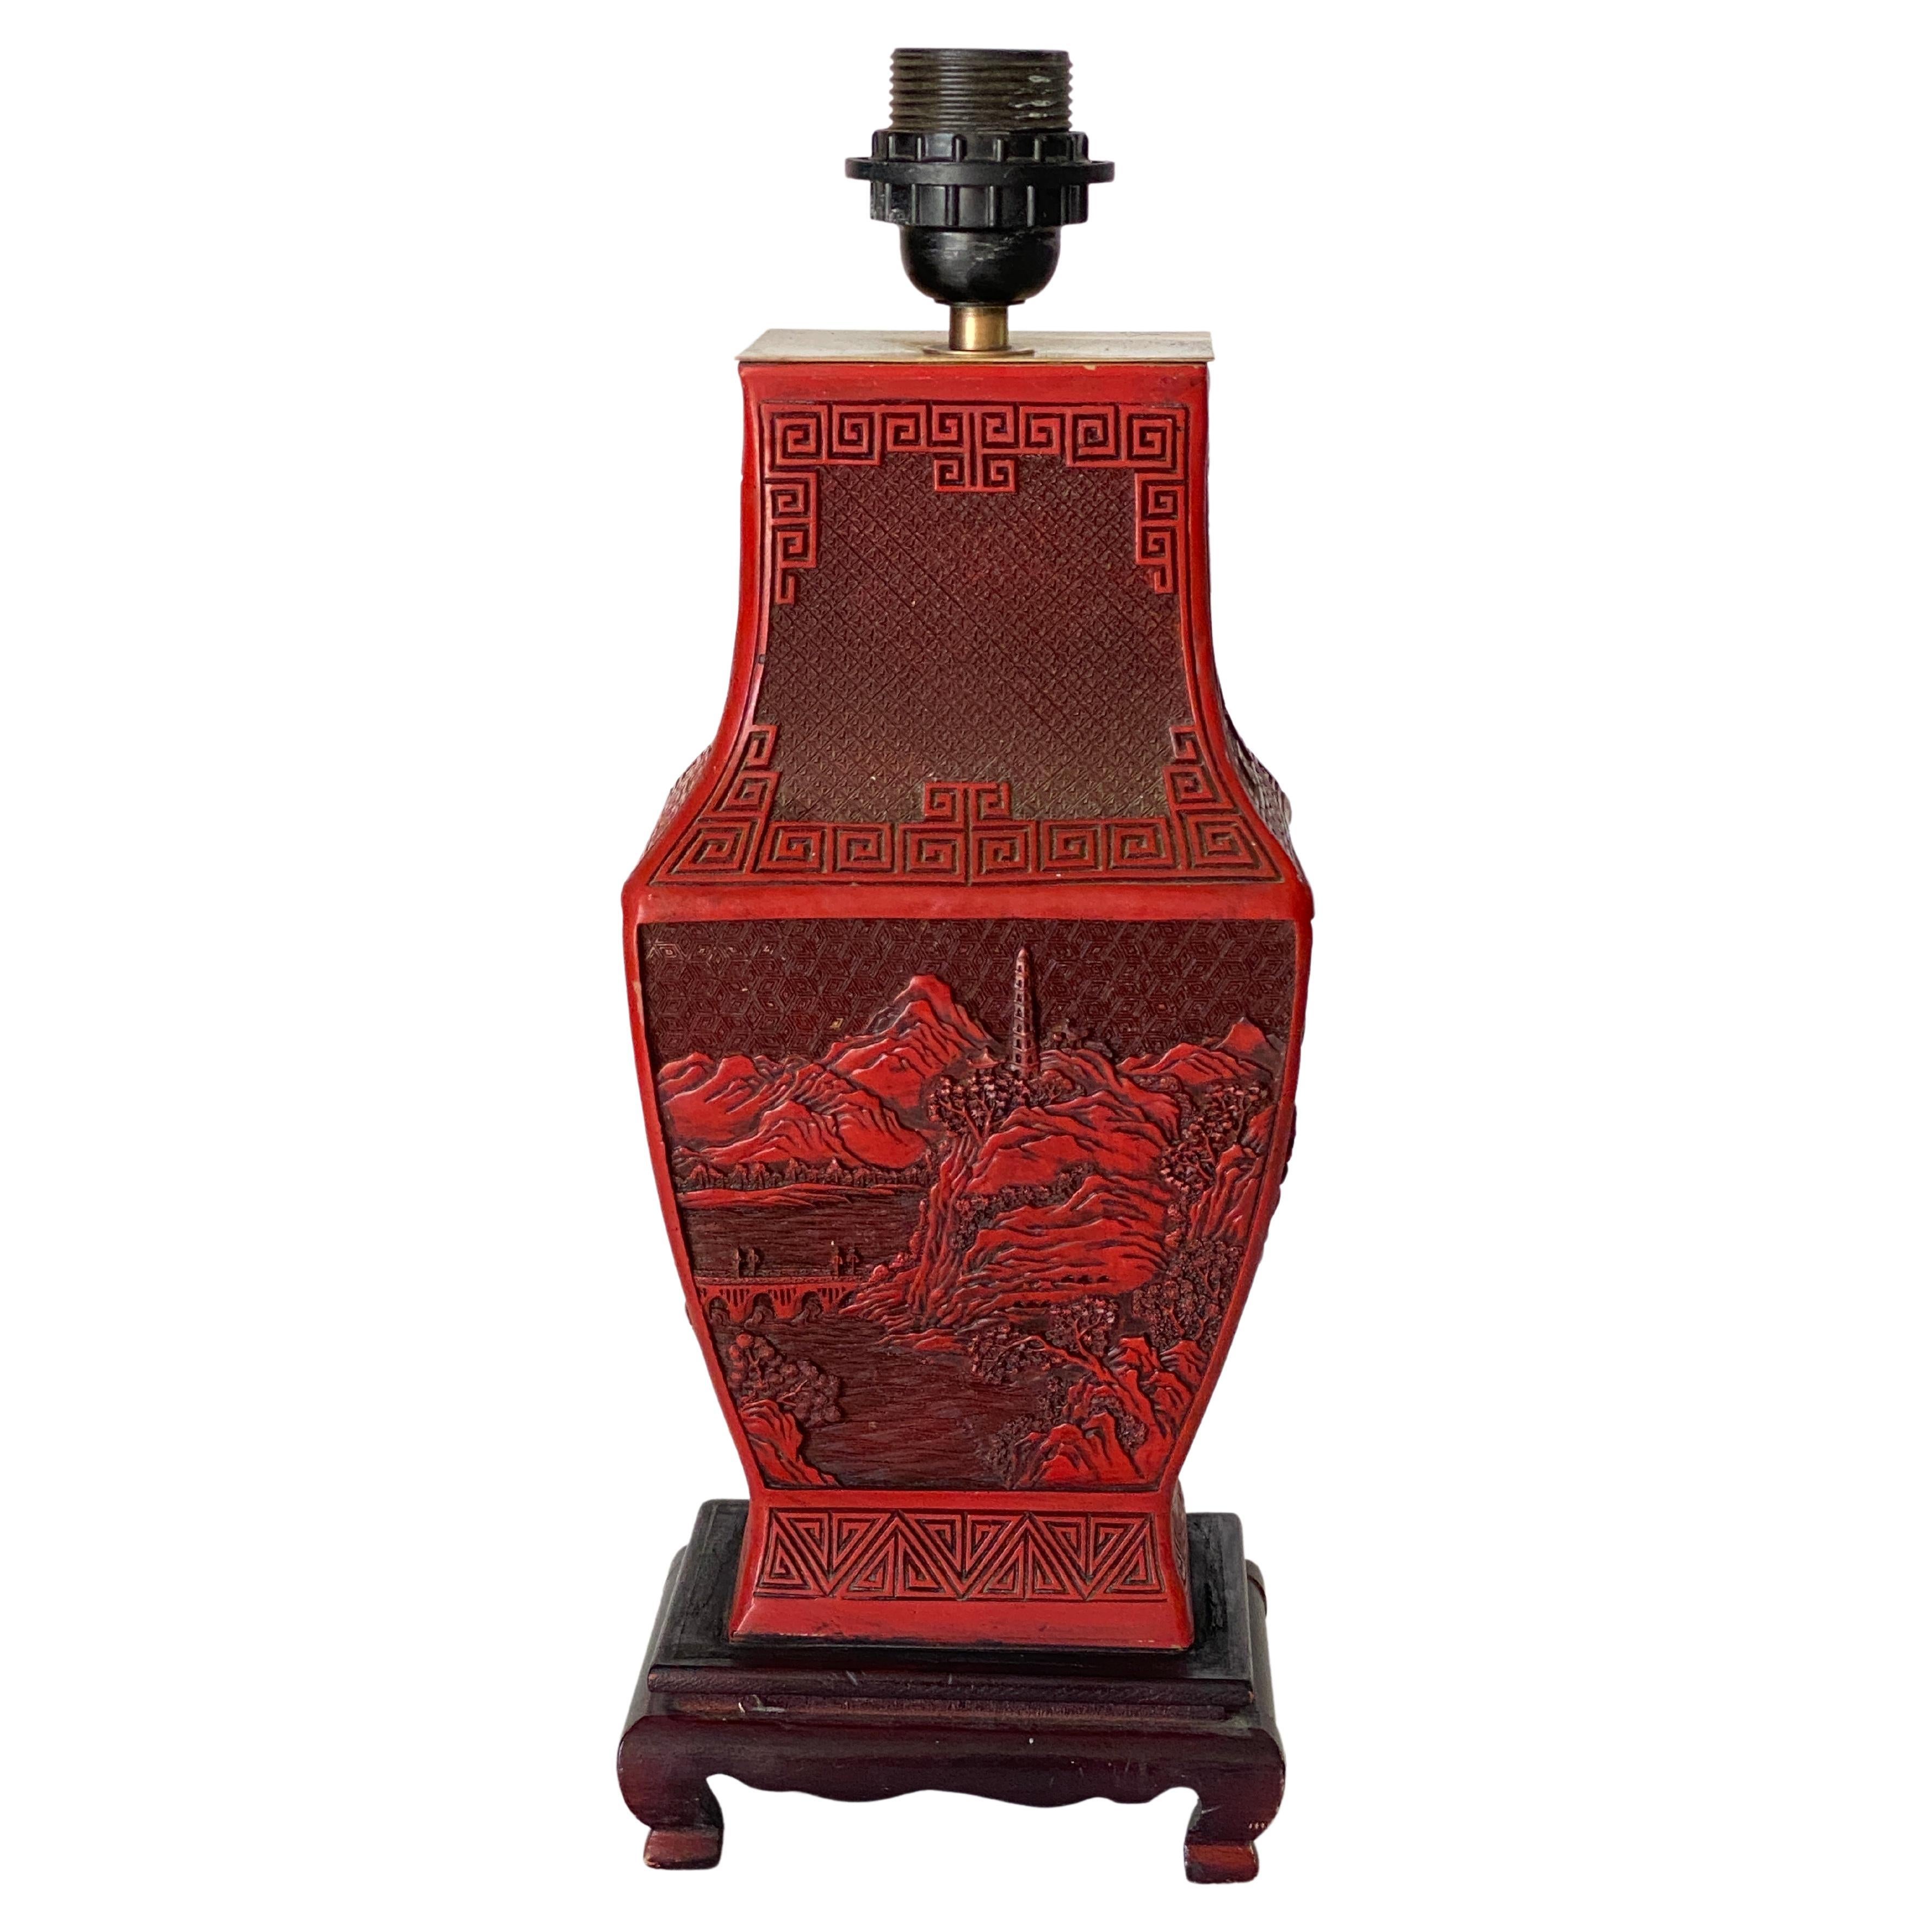 Ce superbe vase chinois en cinabre est minutieusement sculpté de figures chinoises et d'éléments naturels, et repose sur une base en bois. Il est situé sur une base en bois. 19e siècle.
La taille du vase seul est de 11,81 pouces.


L'ADAPTATEUR POUR